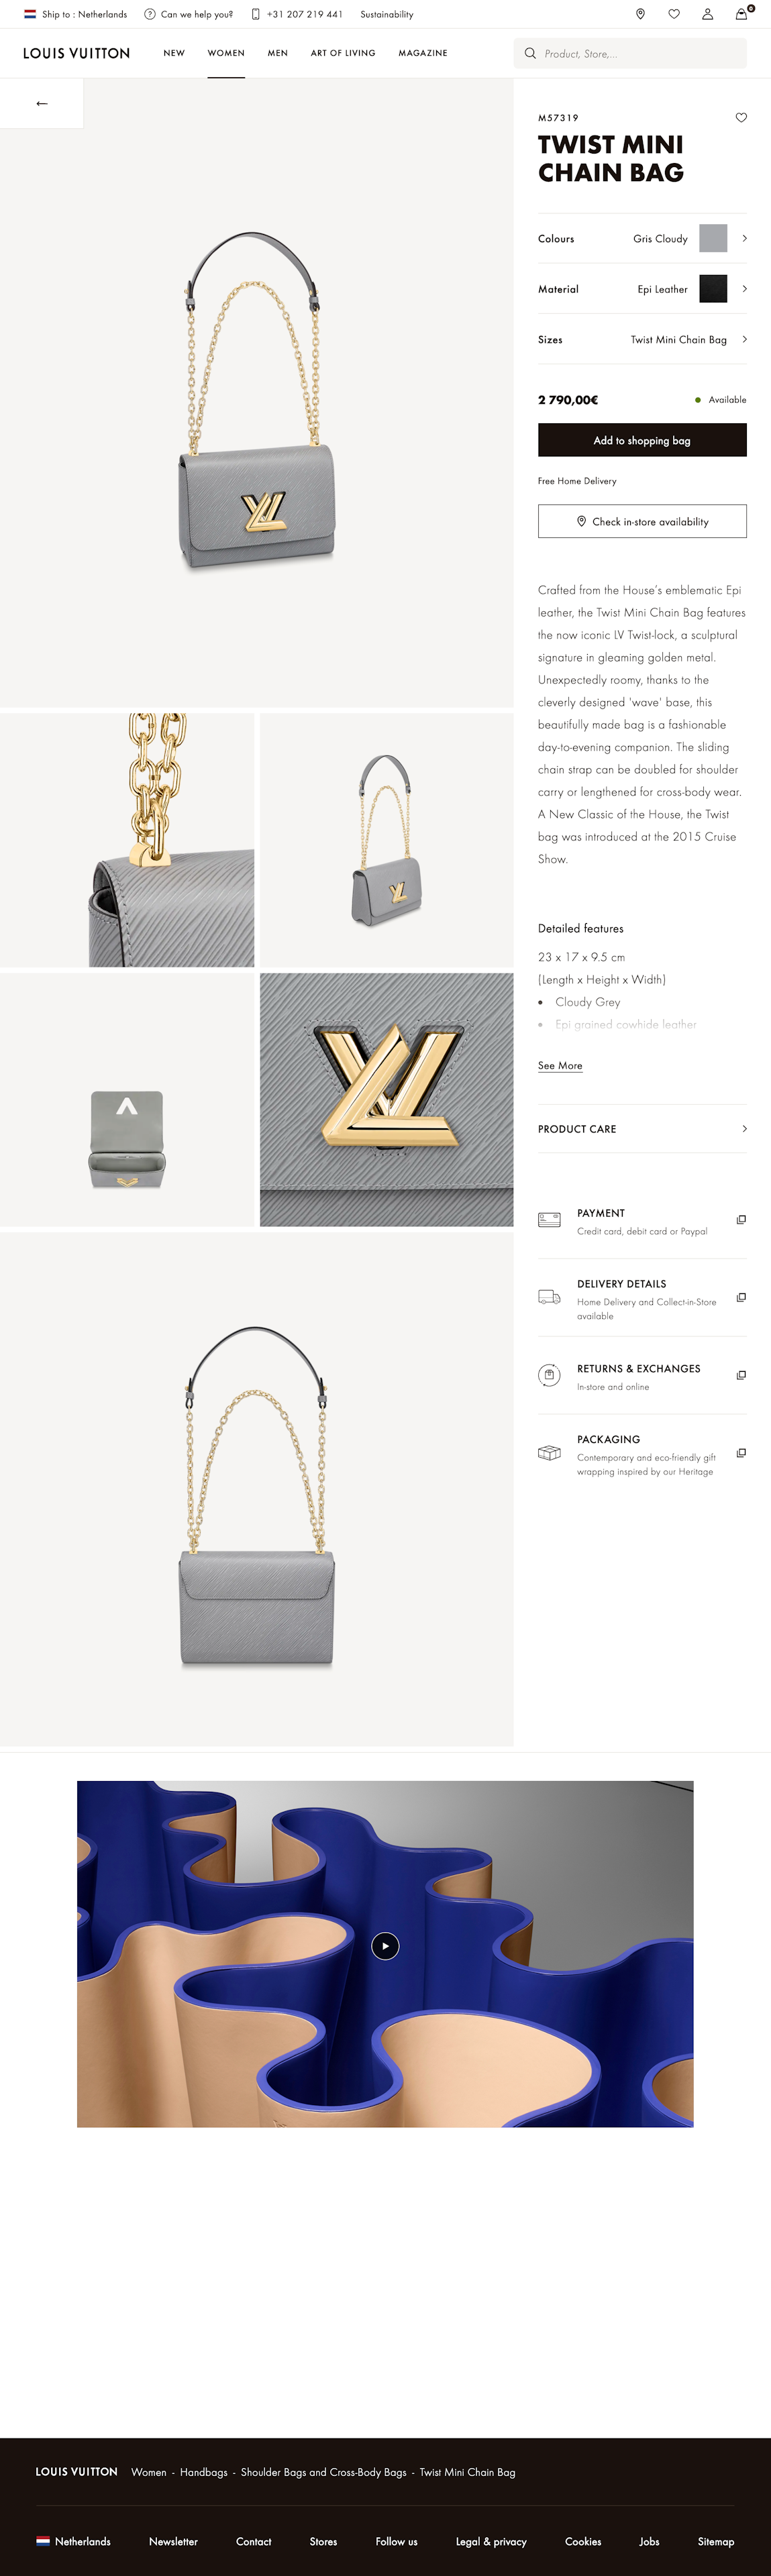 LOUIS VUITTON / Brand Website & E-commerce Platform - ilariat